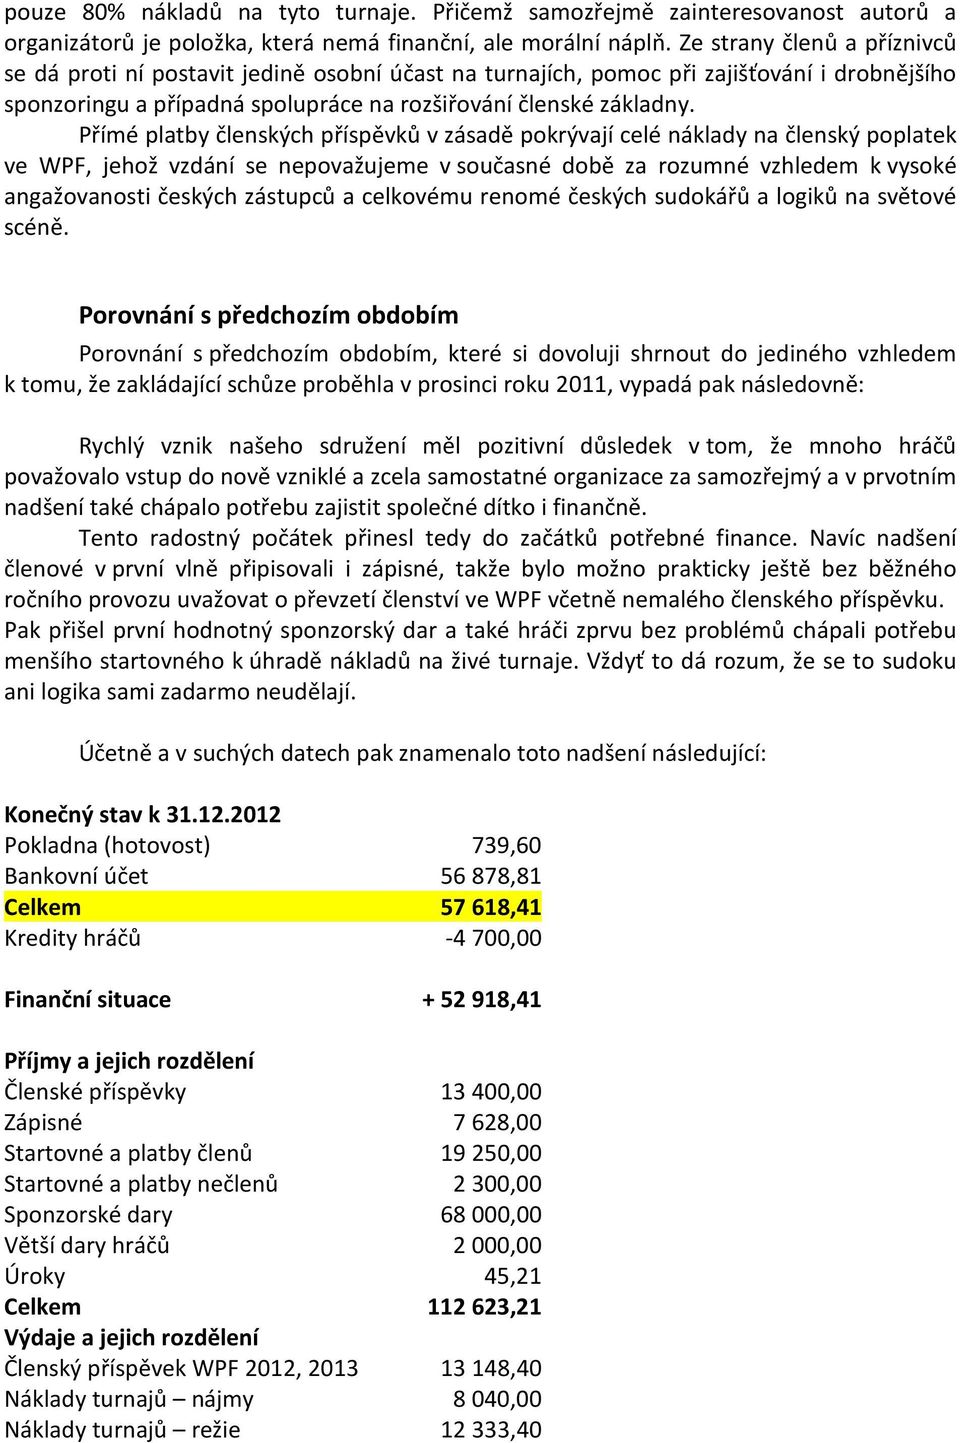 Přímé platby členských příspěvků v zásadě pokrývají celé náklady na členský poplatek ve WPF, jehož vzdání se nepovažujeme v současné době za rozumné vzhledem k vysoké angažovanosti českých zástupců a